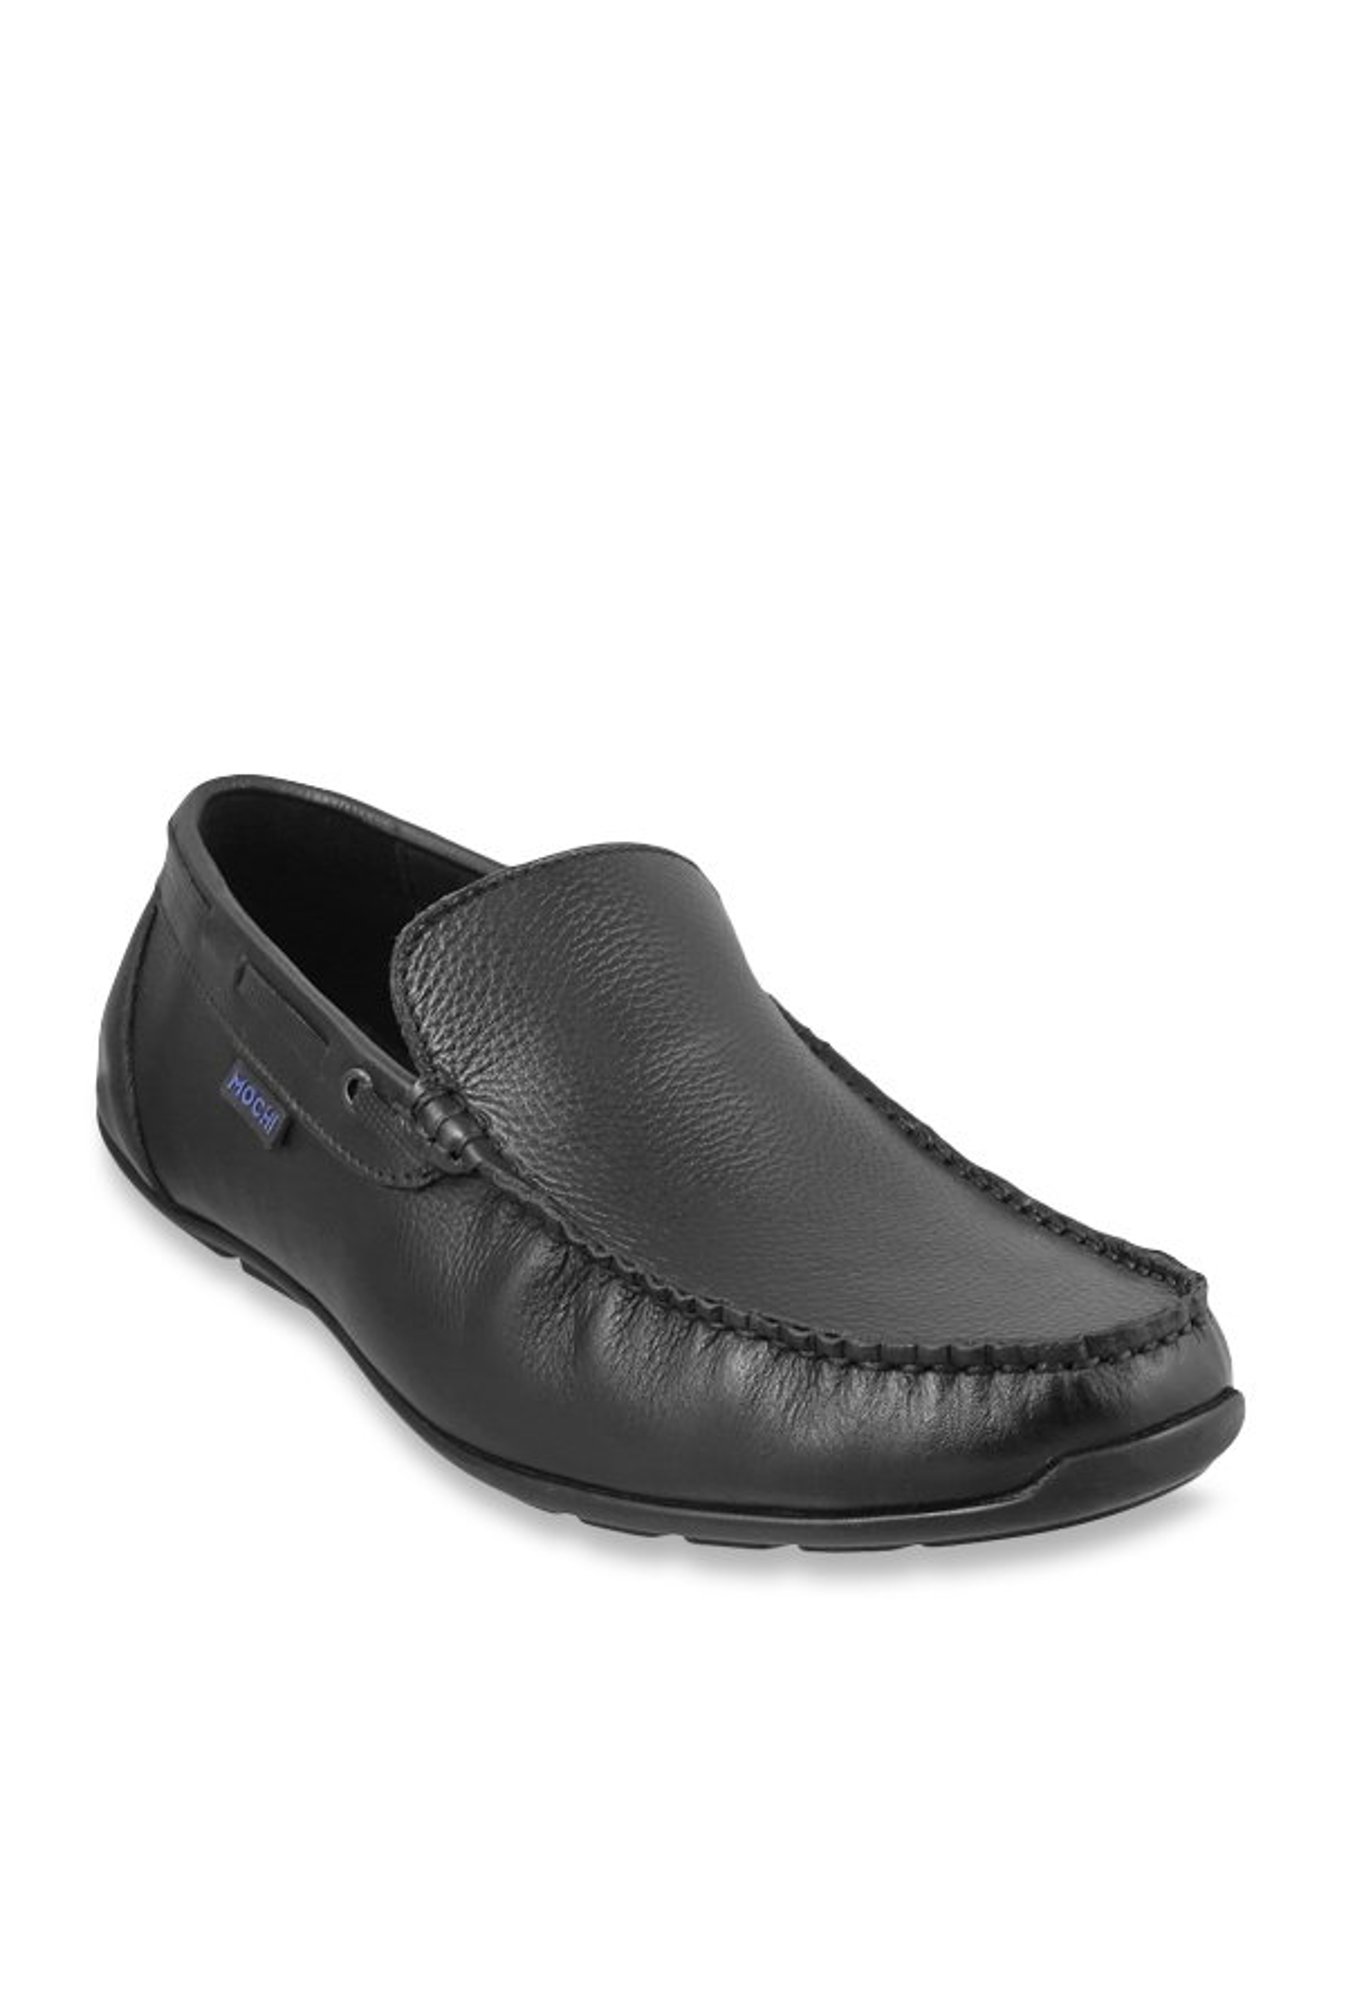 black slip on boat shoes